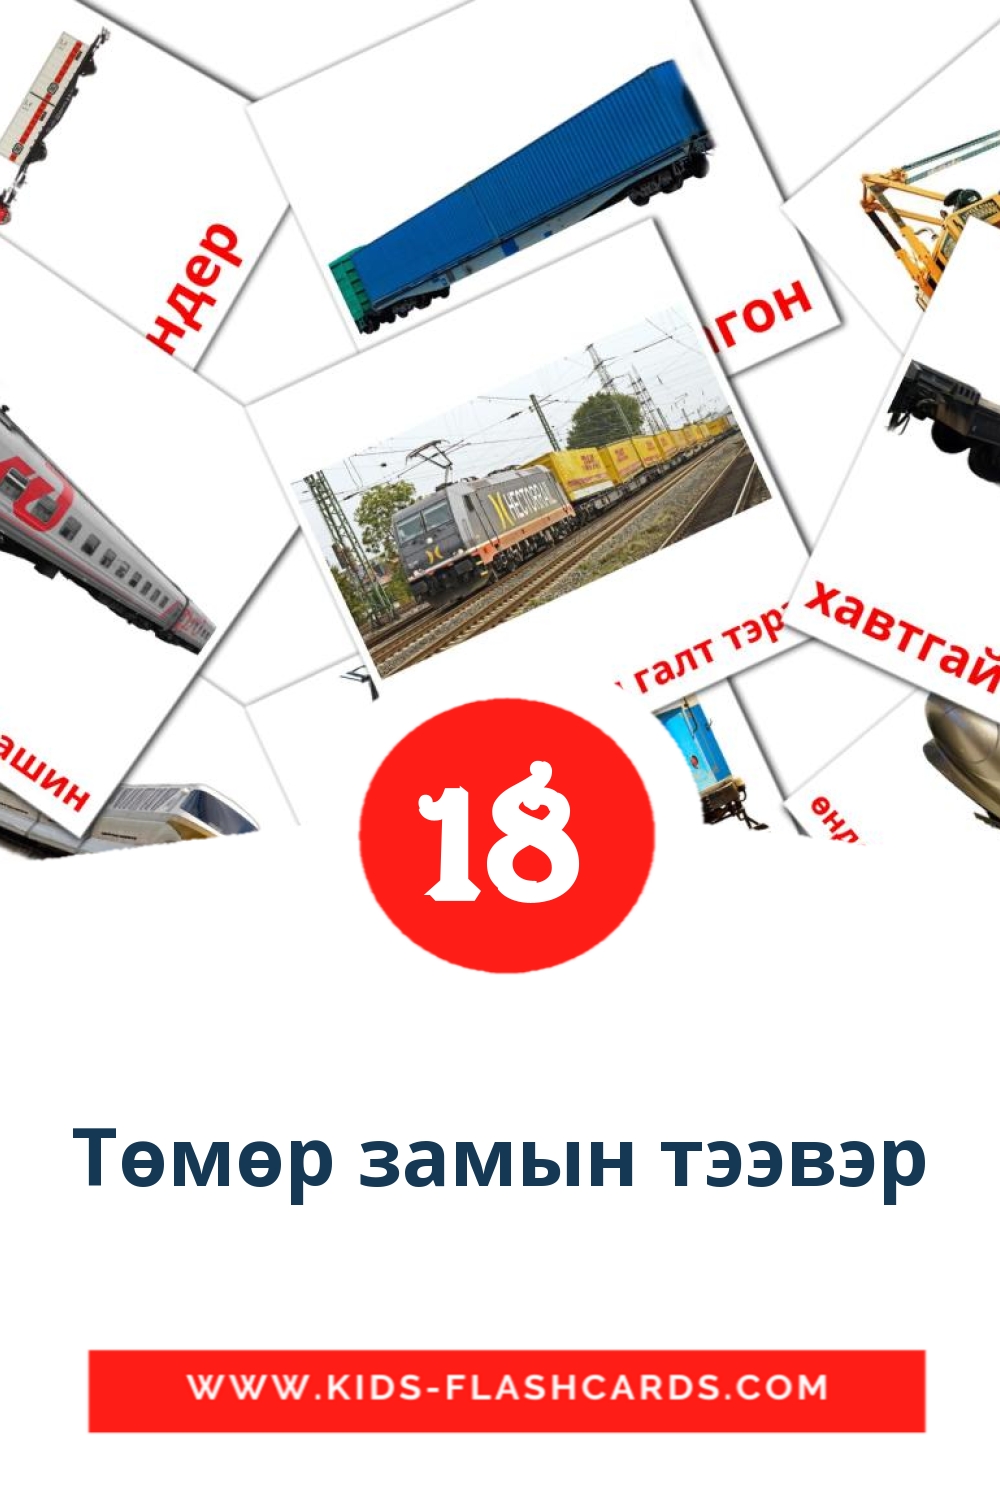 18 cartes illustrées de Төмөр замын тээвэр pour la maternelle en mongol